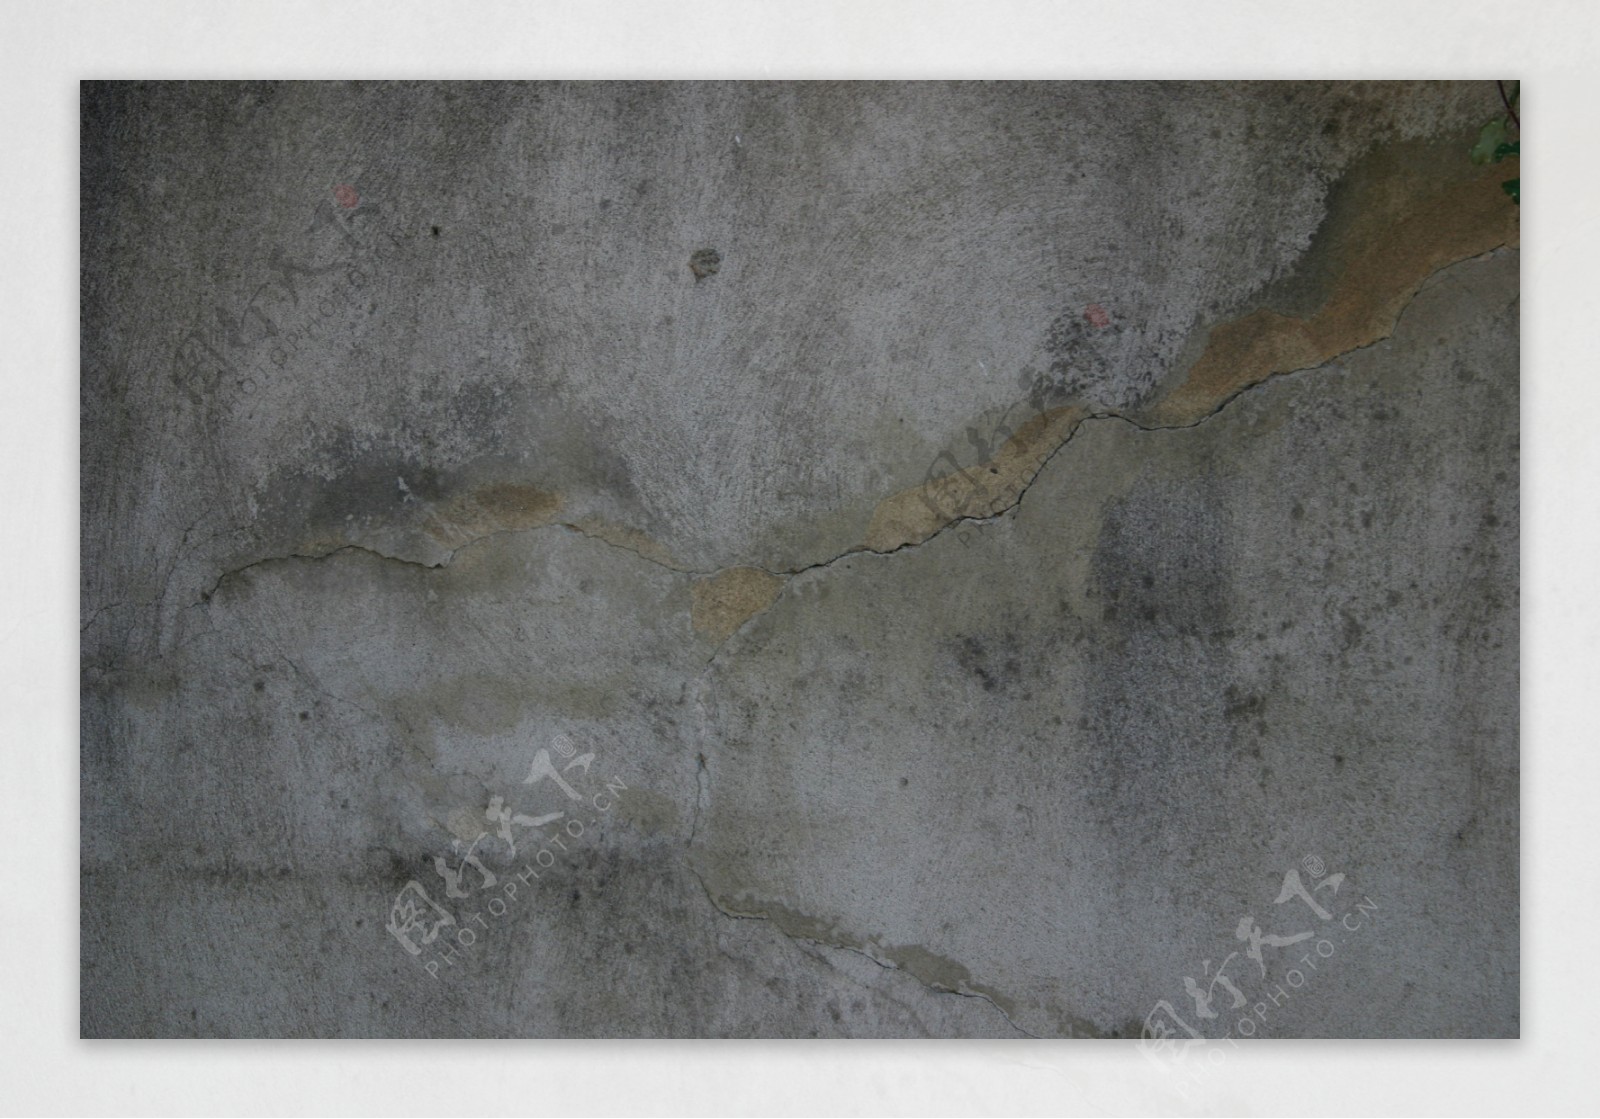 斑驳裂纹水泥墙背景图片